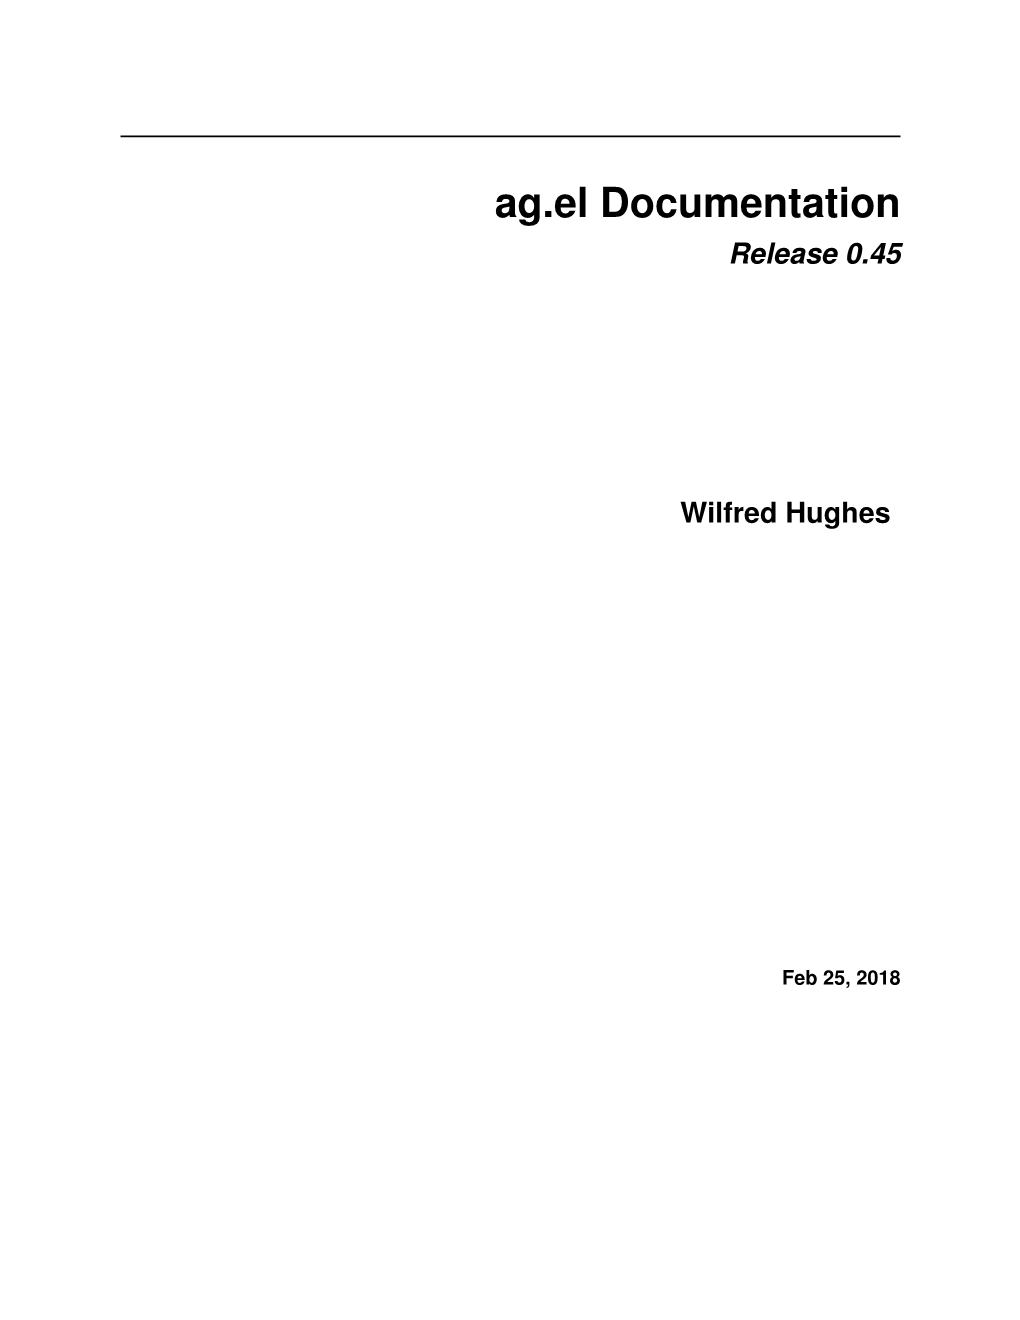 Ag.El Documentation Release 0.45